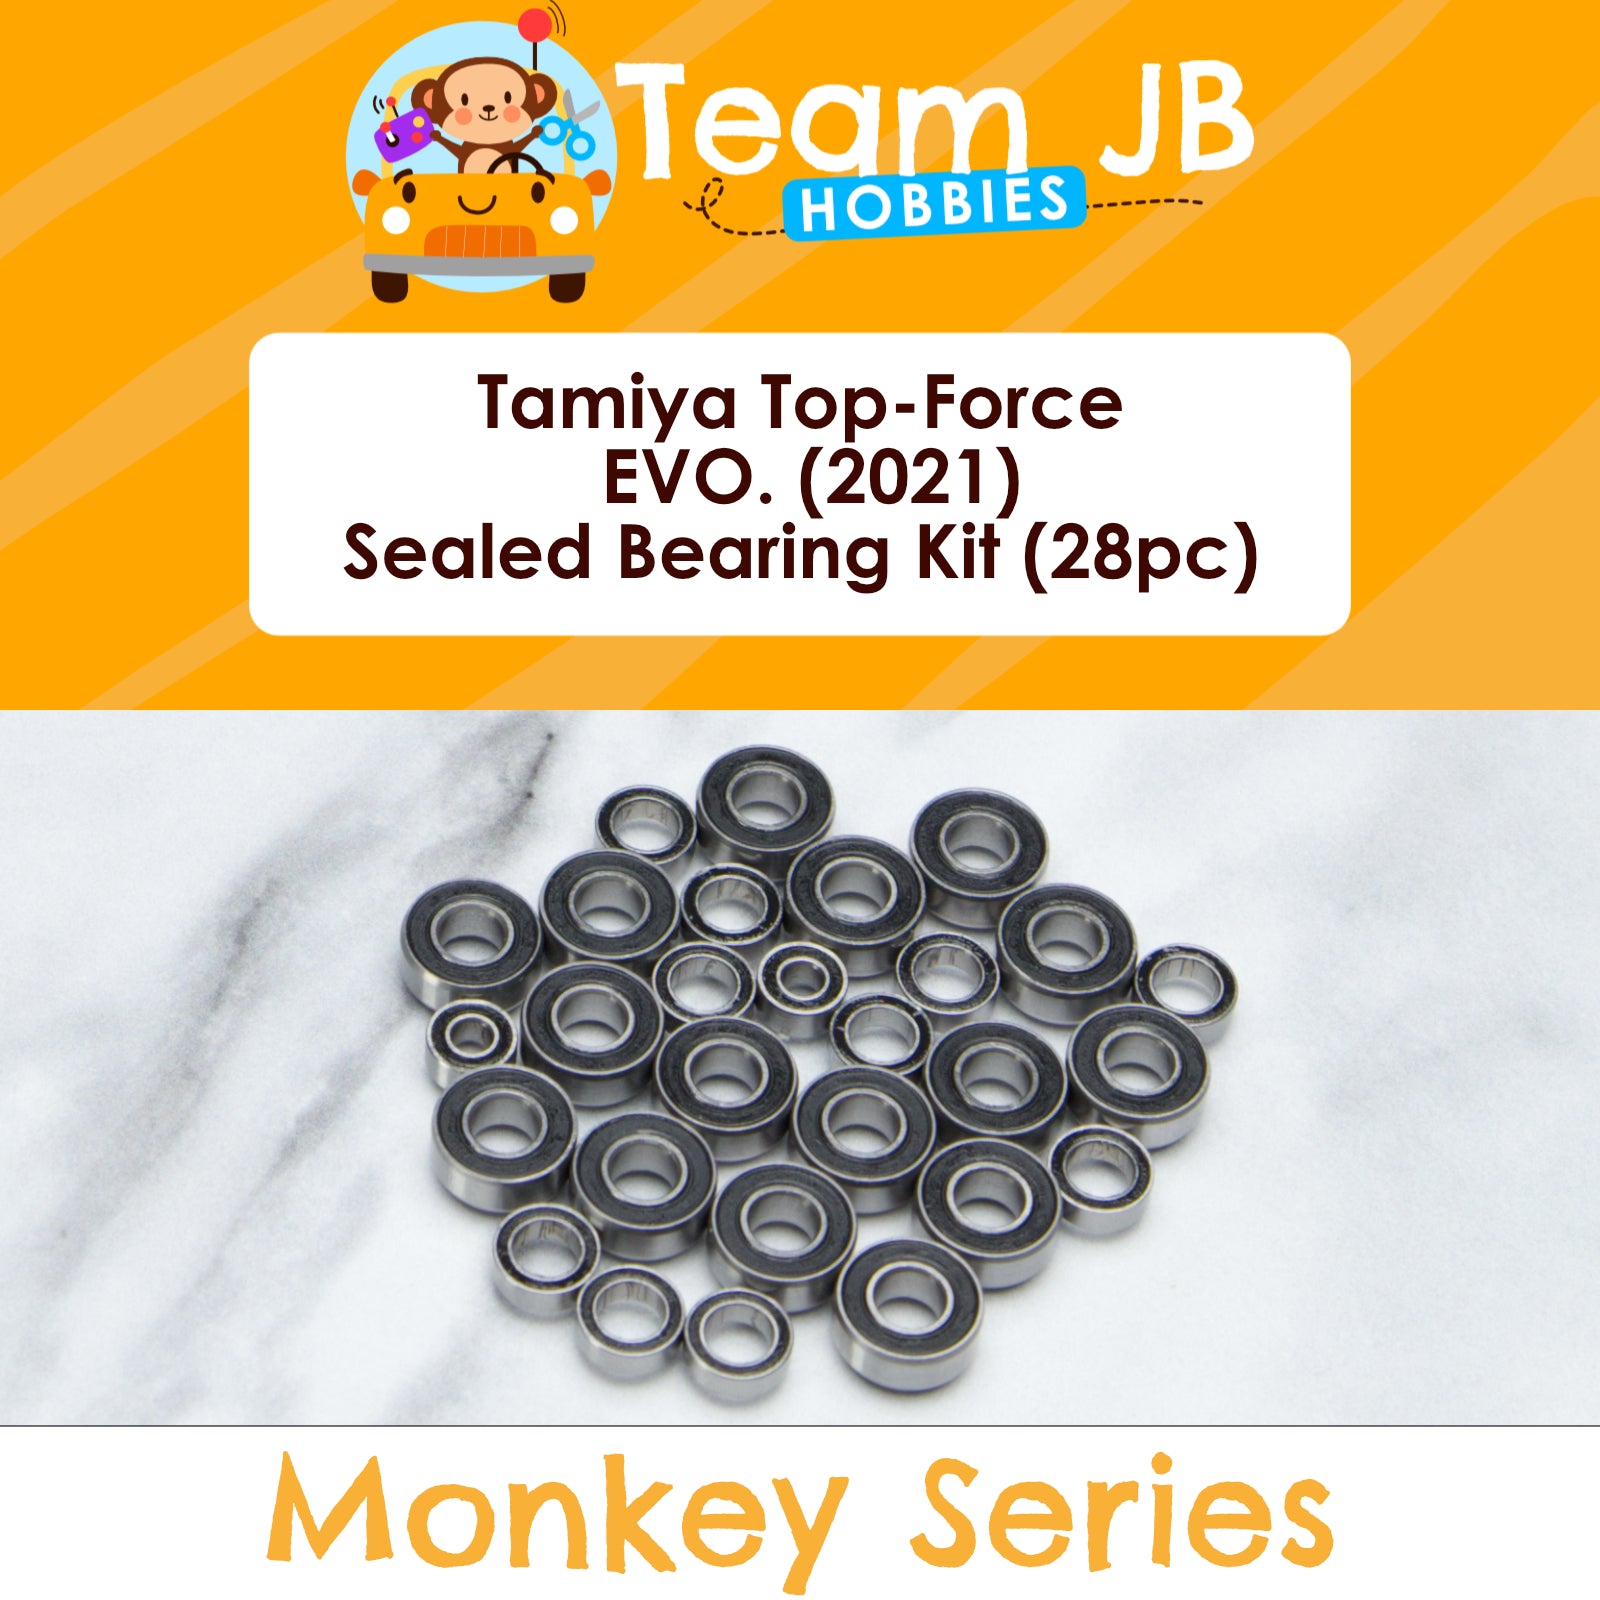 Tamiya Top-Force EVO. (2021) - Sealed Bearing Kit